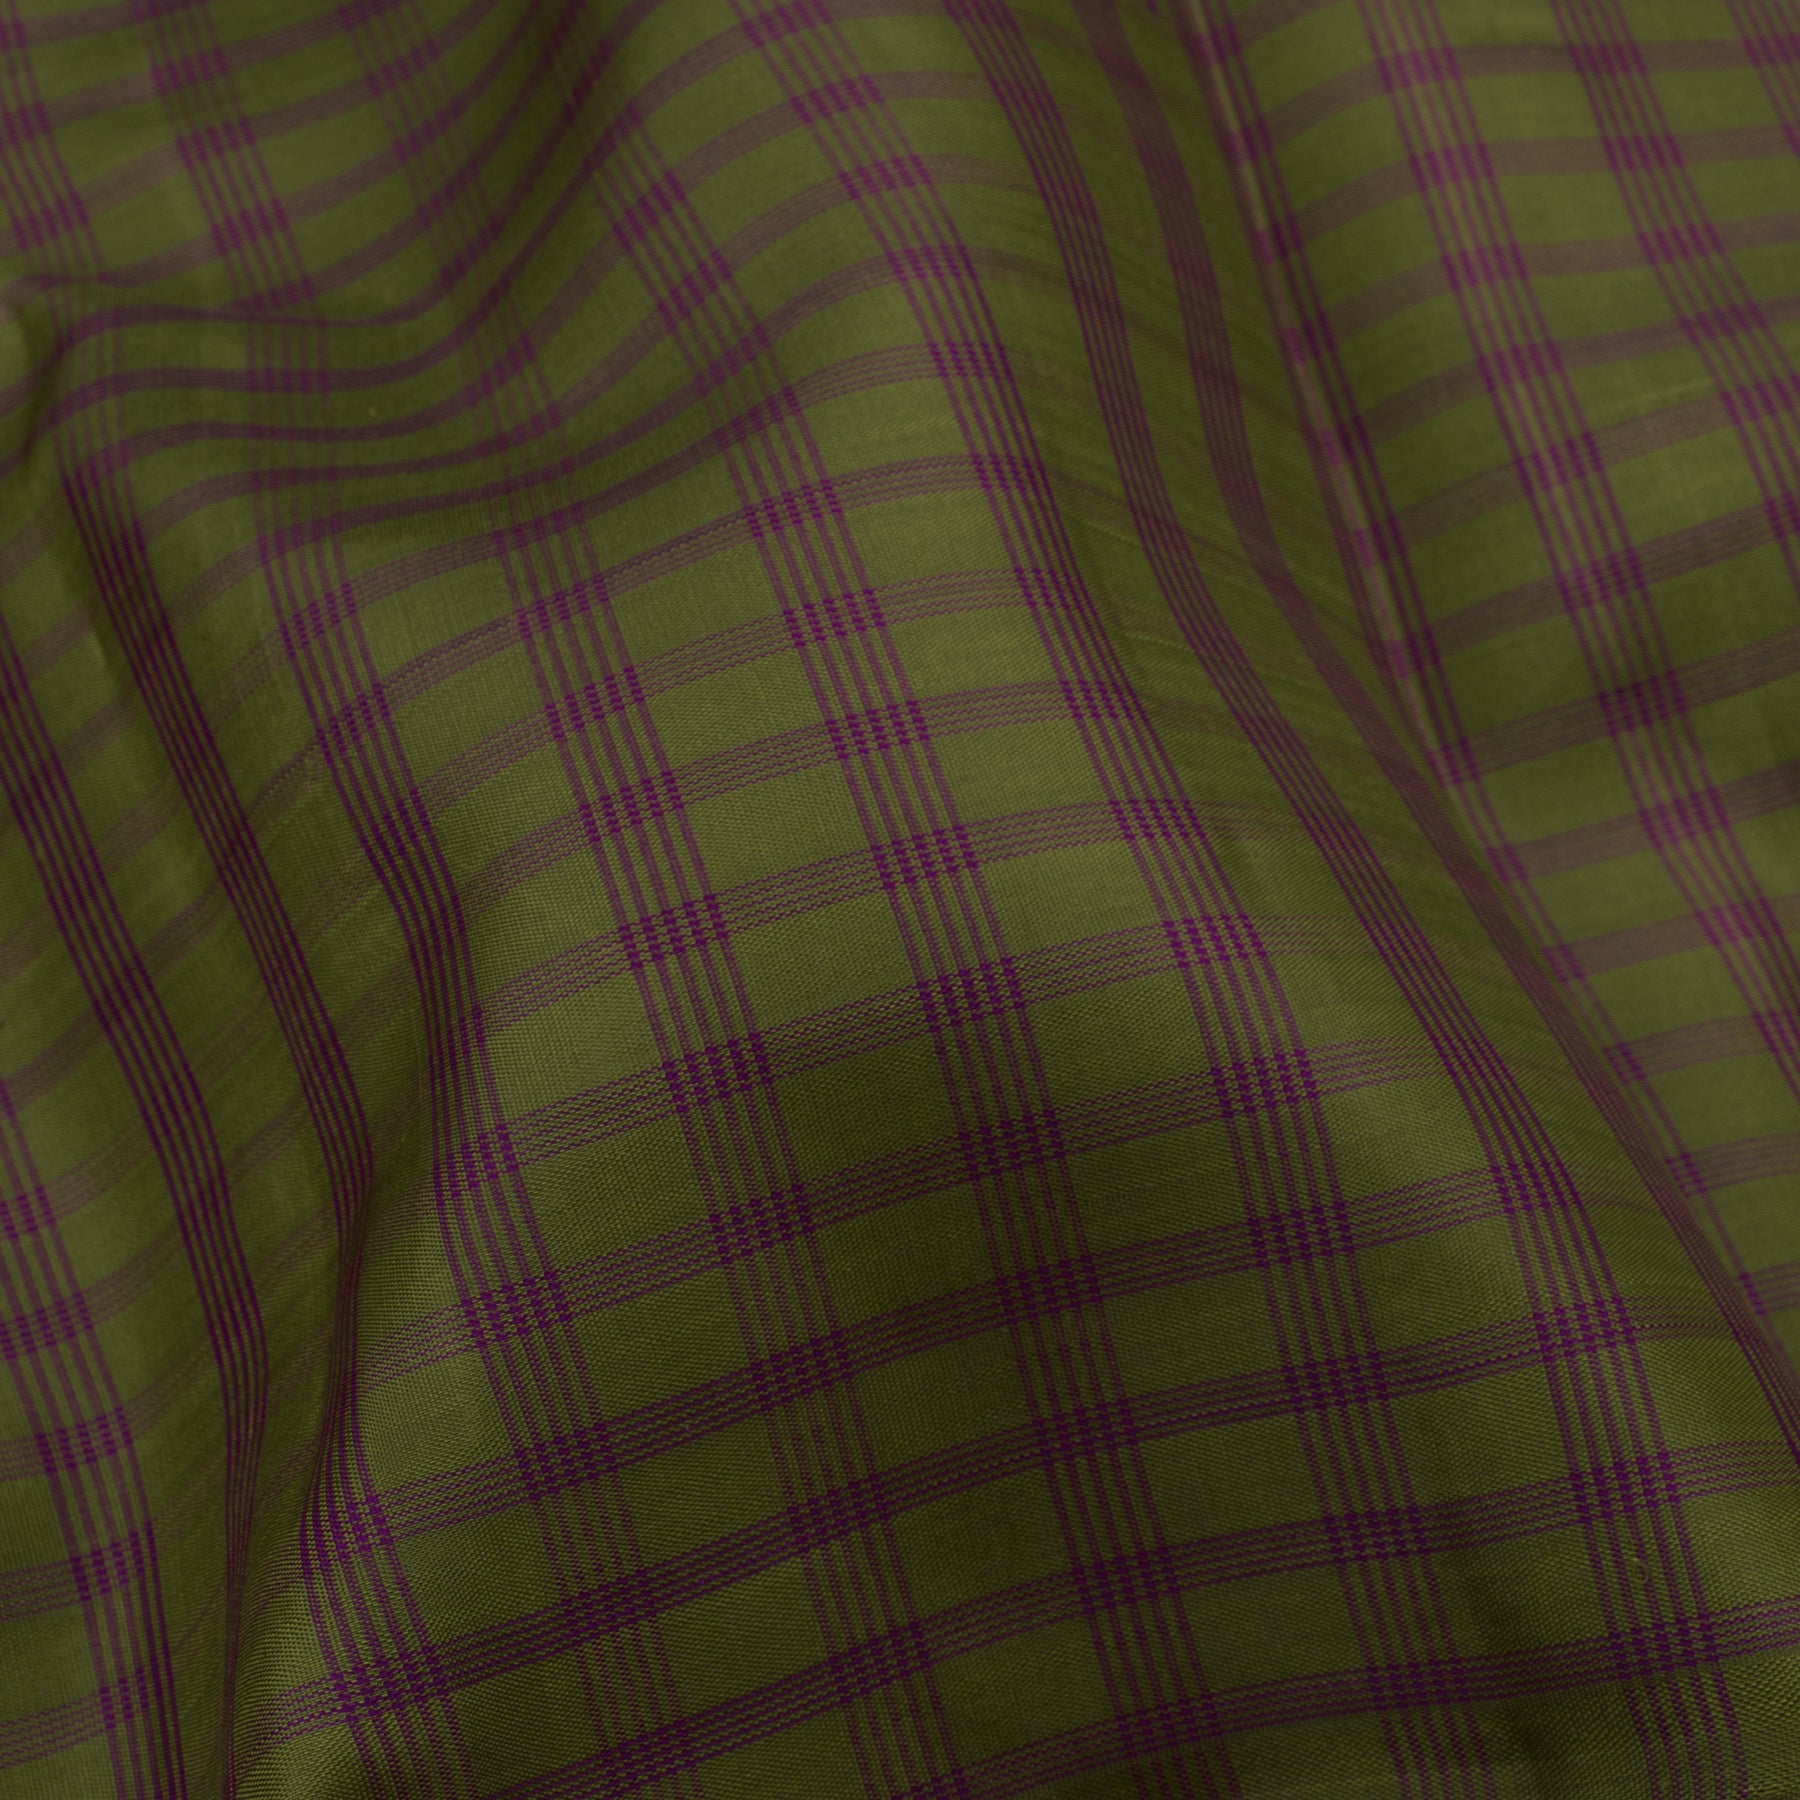 Kanakavalli Kanjivaram Silk Sari 23-595-HS001-00406 - Fabric View